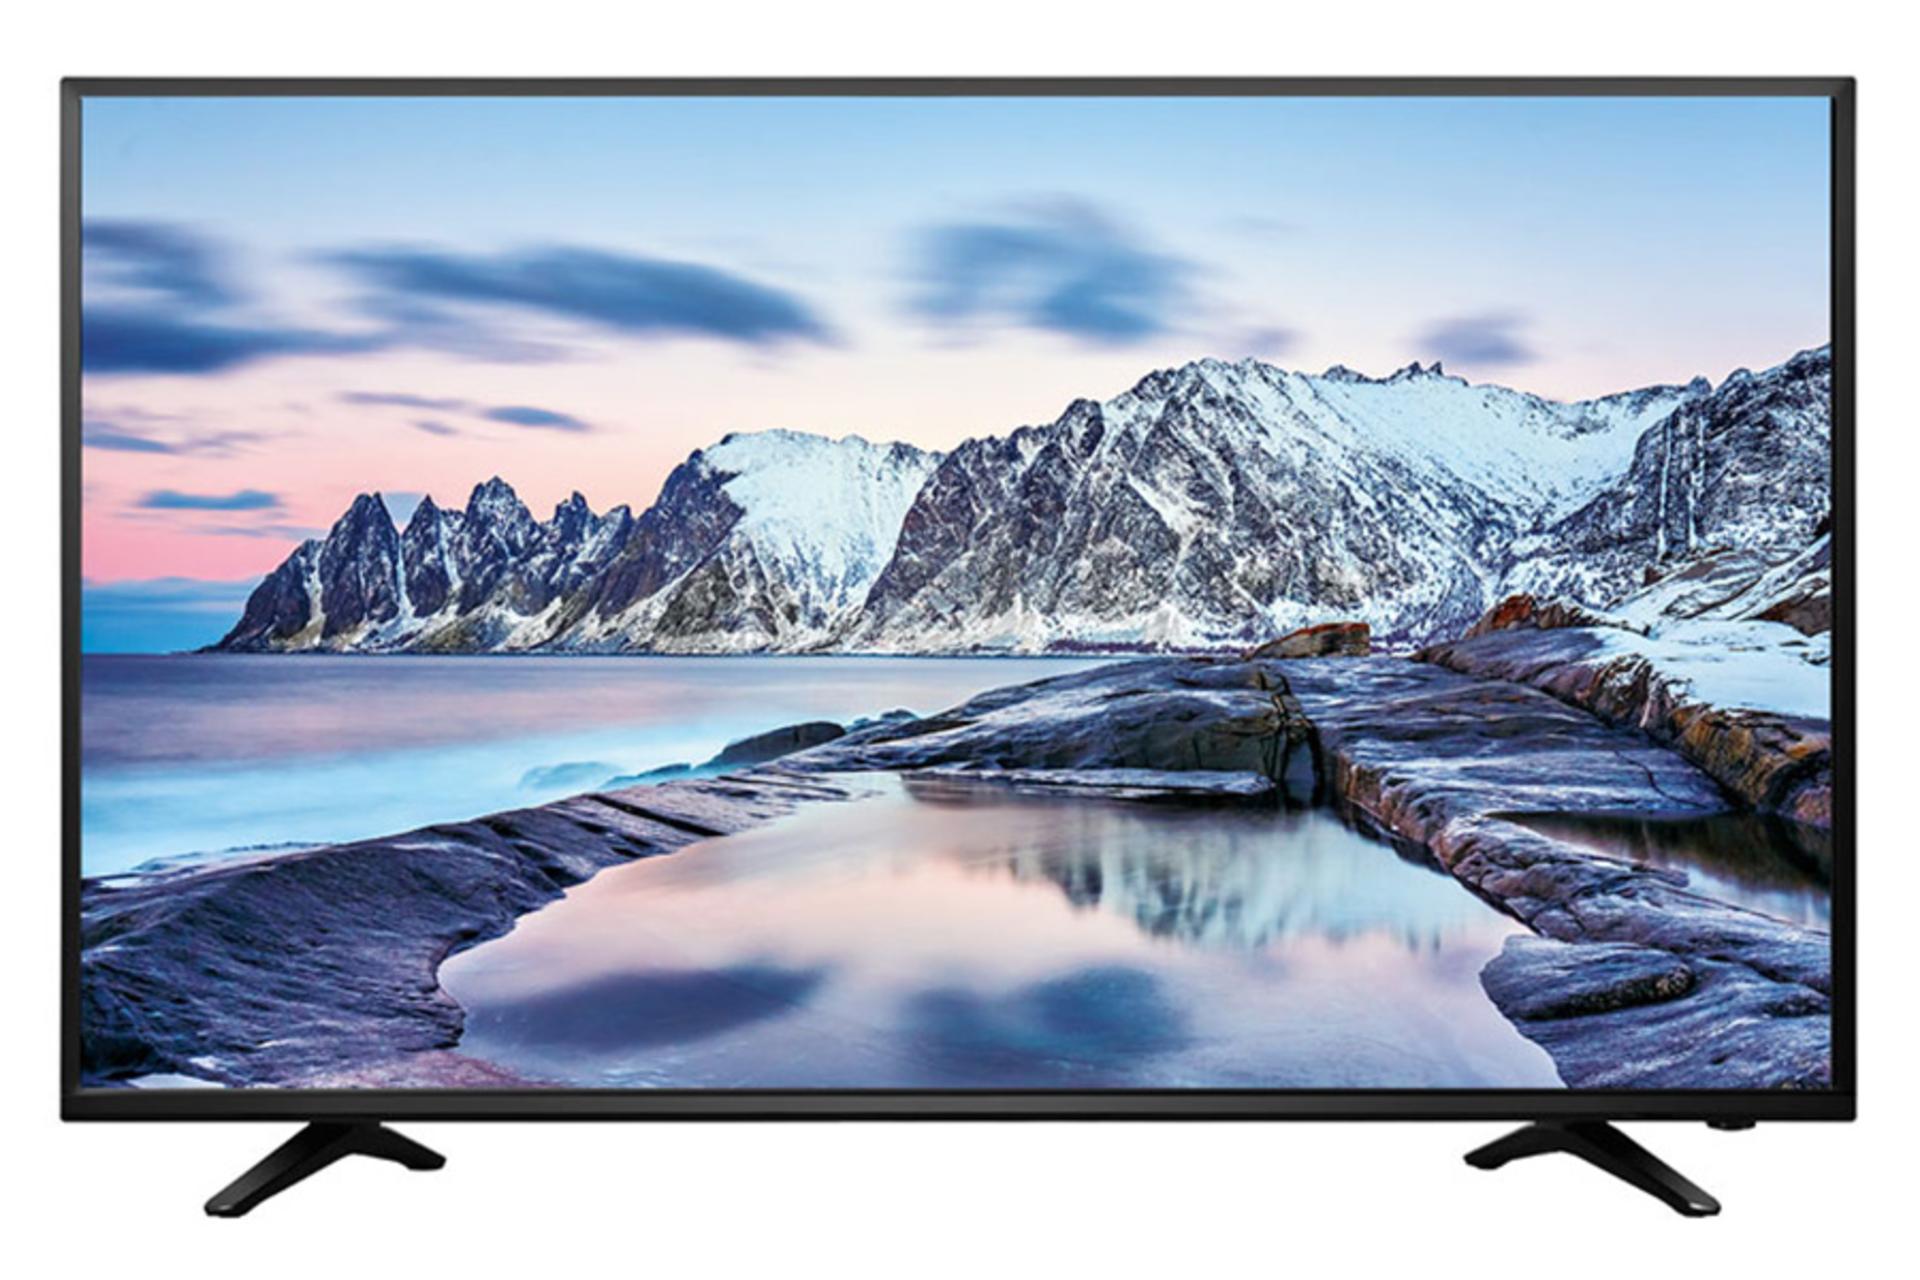 نمای جلو تلویزیون هایسنس N2173 مدل 32 اینچ با صفحه روشن